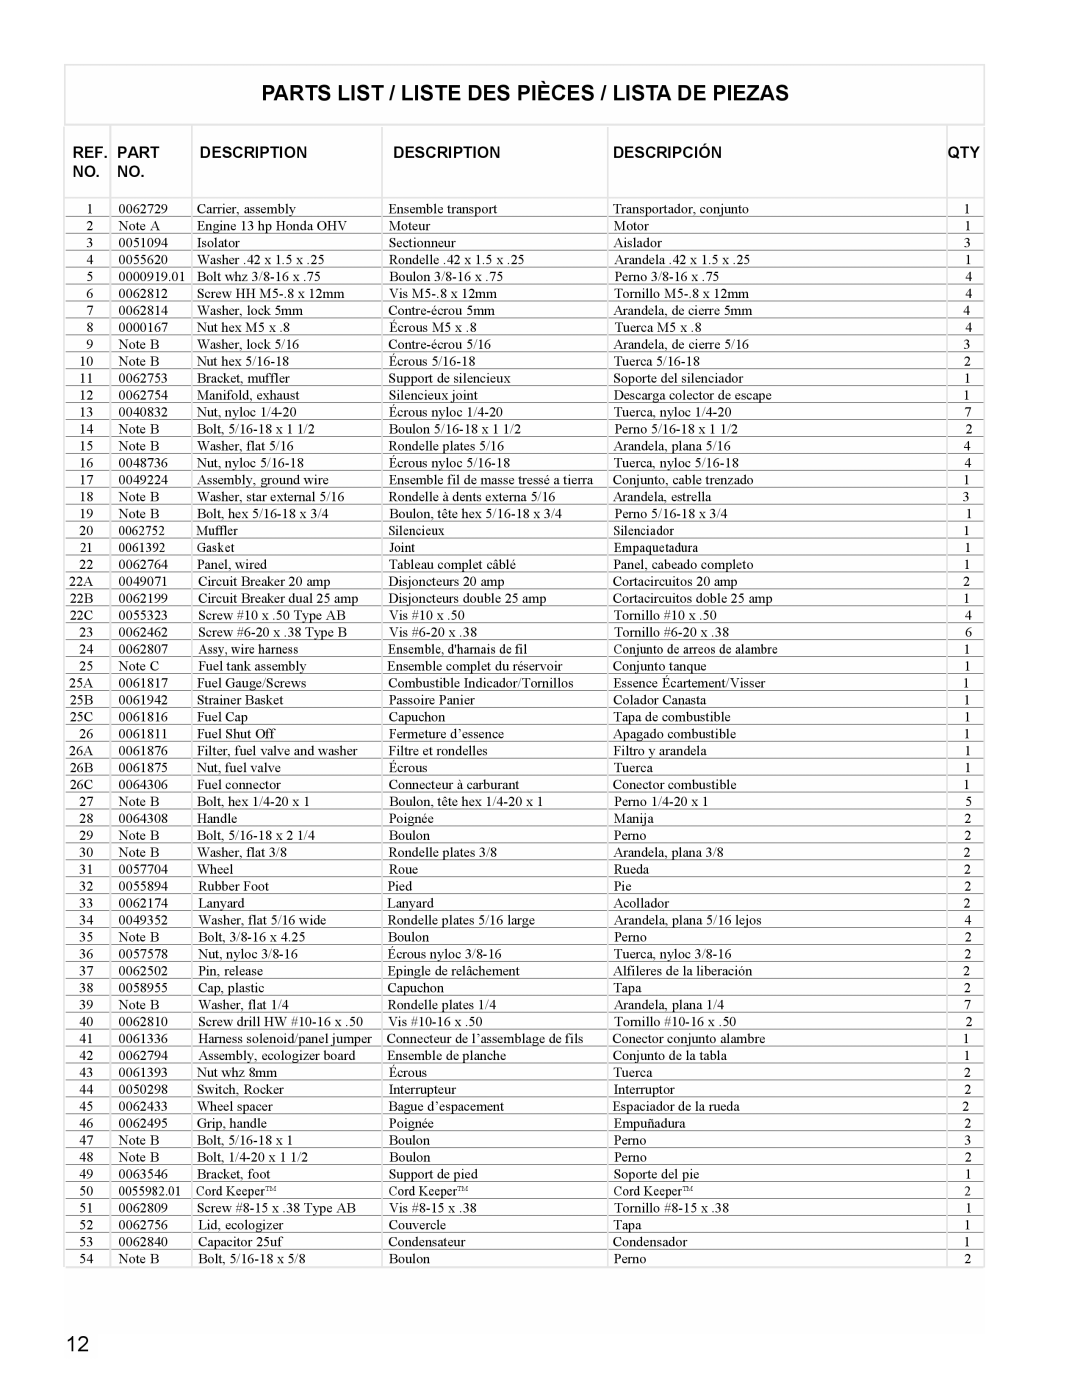 Powermate PMC605000 manual Parts List / Liste Des Pièces / Lista De Piezas, Description, Descripción 